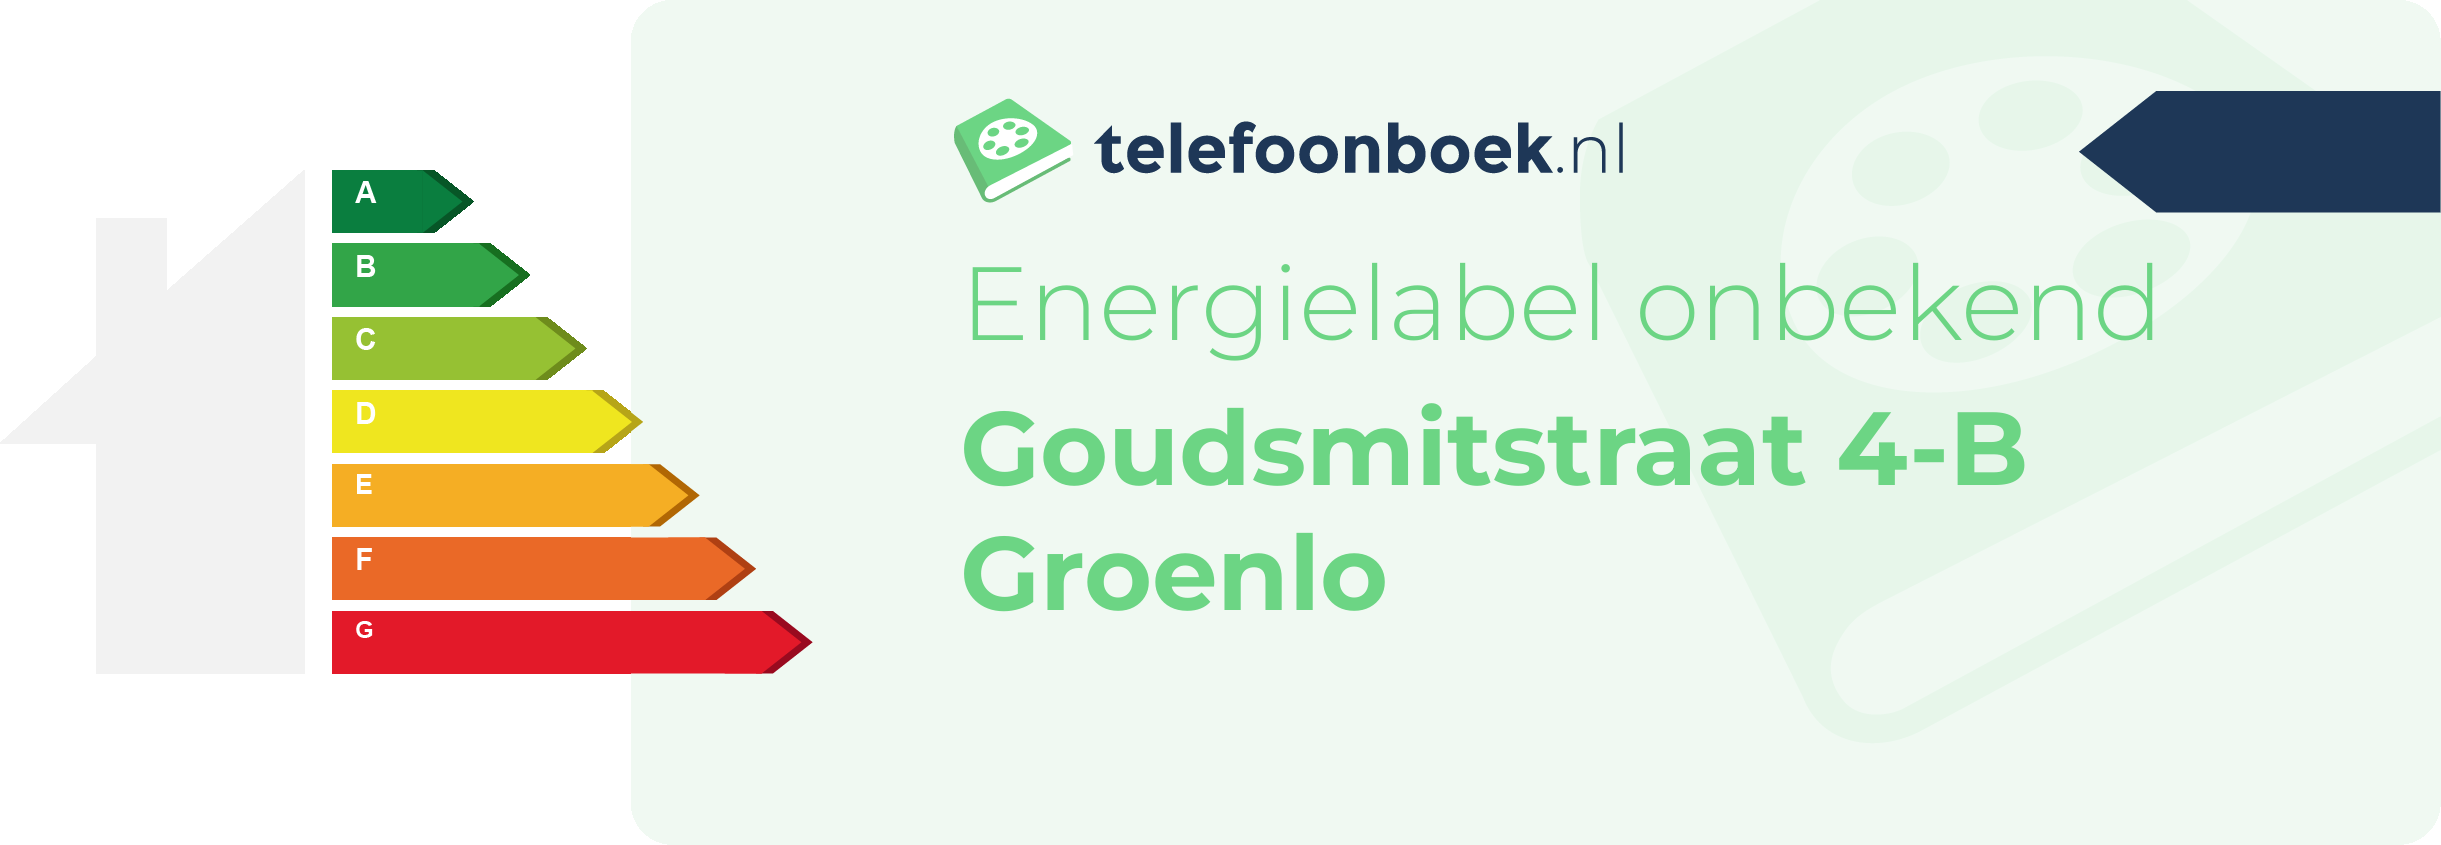 Energielabel Goudsmitstraat 4-B Groenlo